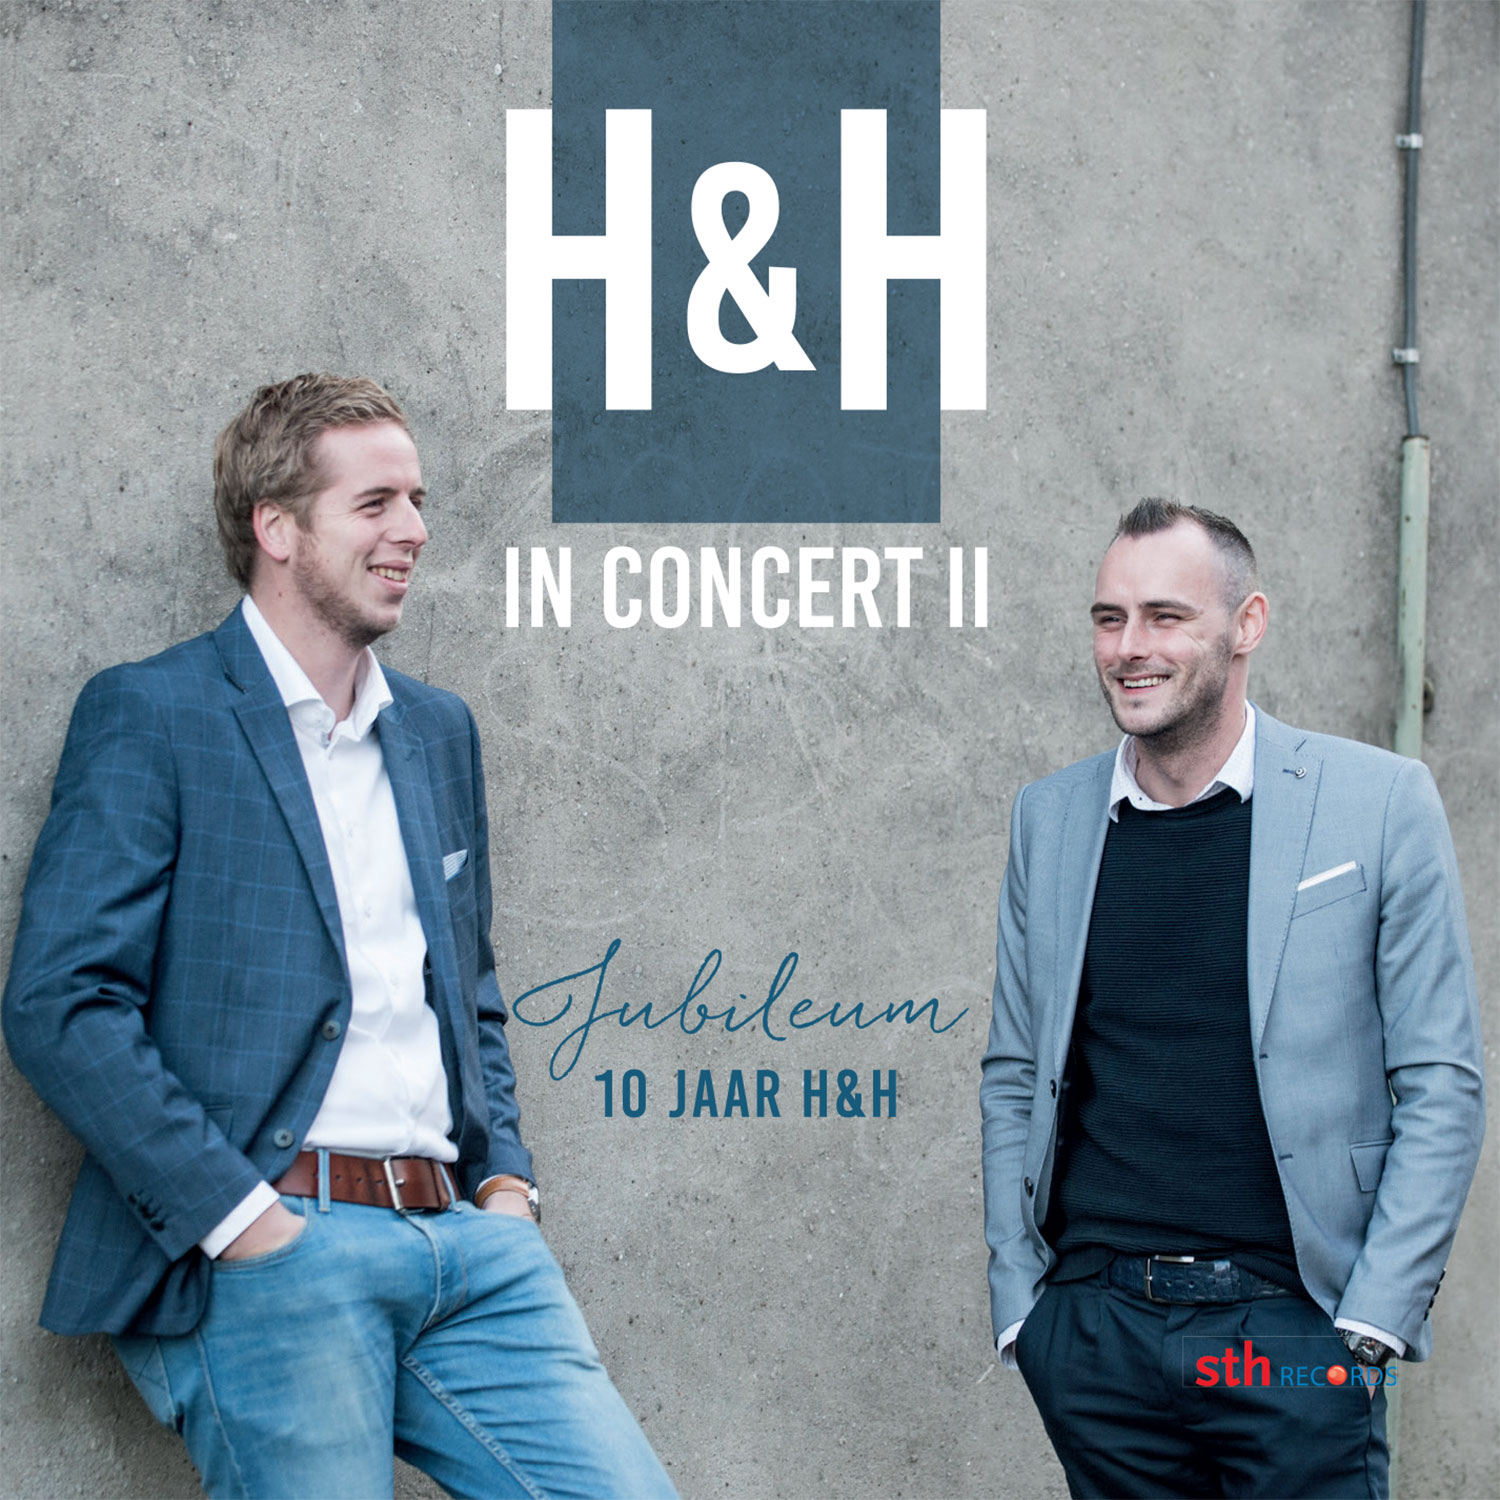 H&H in concert II